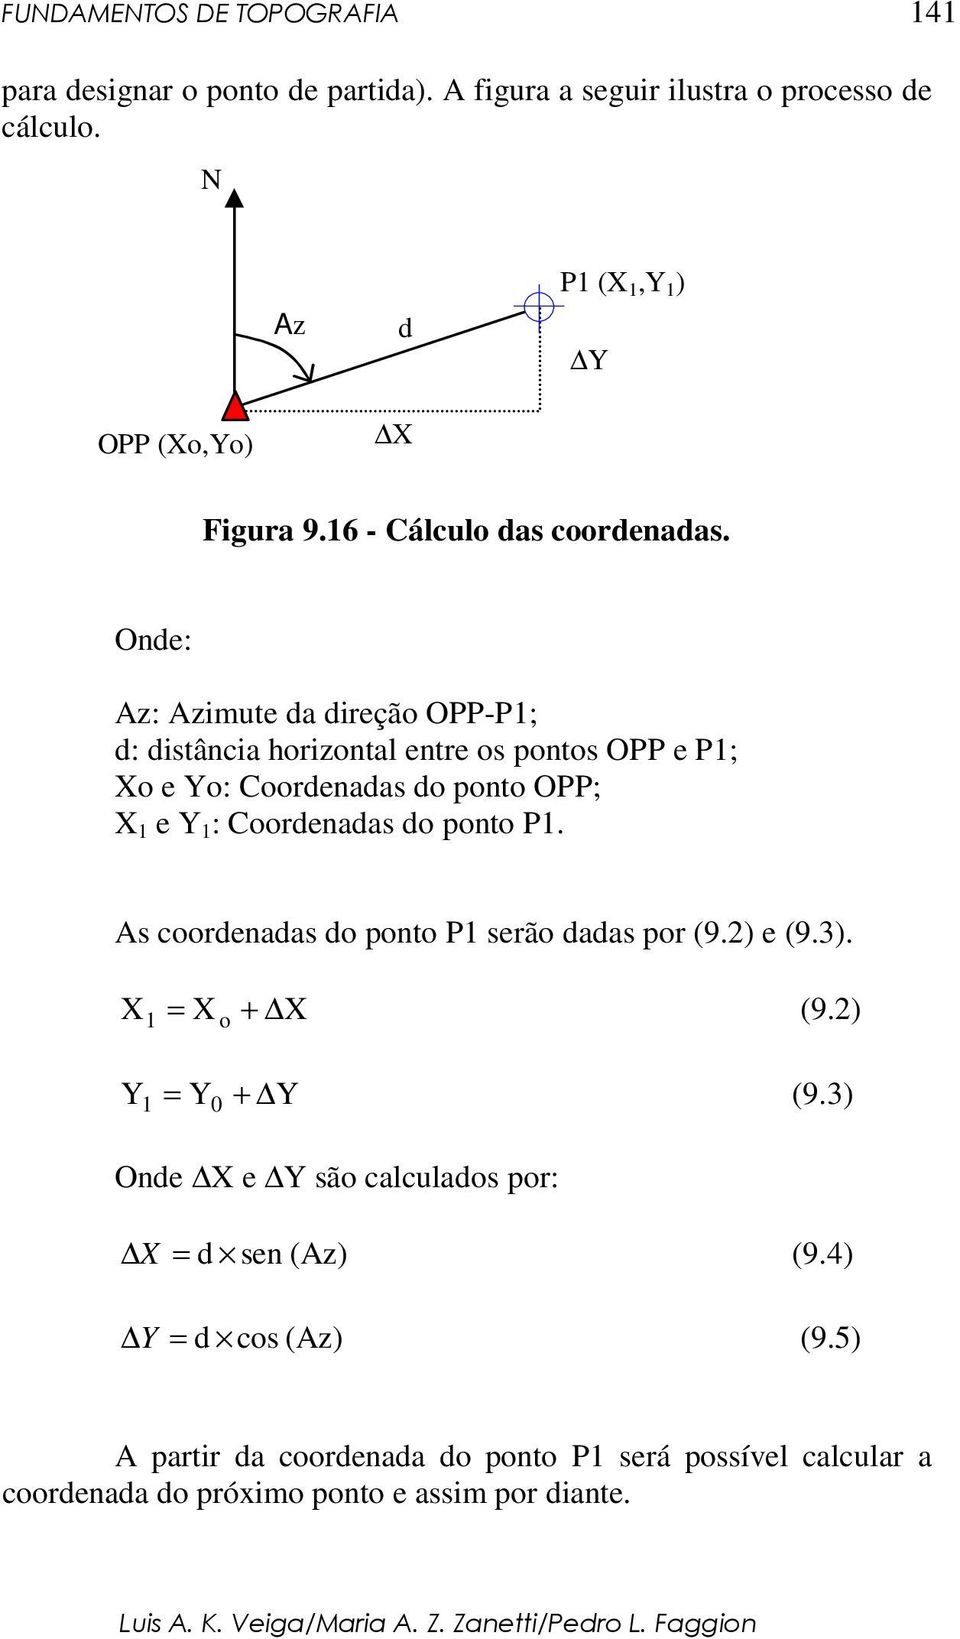 Onde: Az: Azimute da direção OPP-P1; d: distância horizontal entre os pontos OPP e P1; Xo e Yo: Coordenadas do ponto OPP; X 1 e Y 1 : Coordenadas do